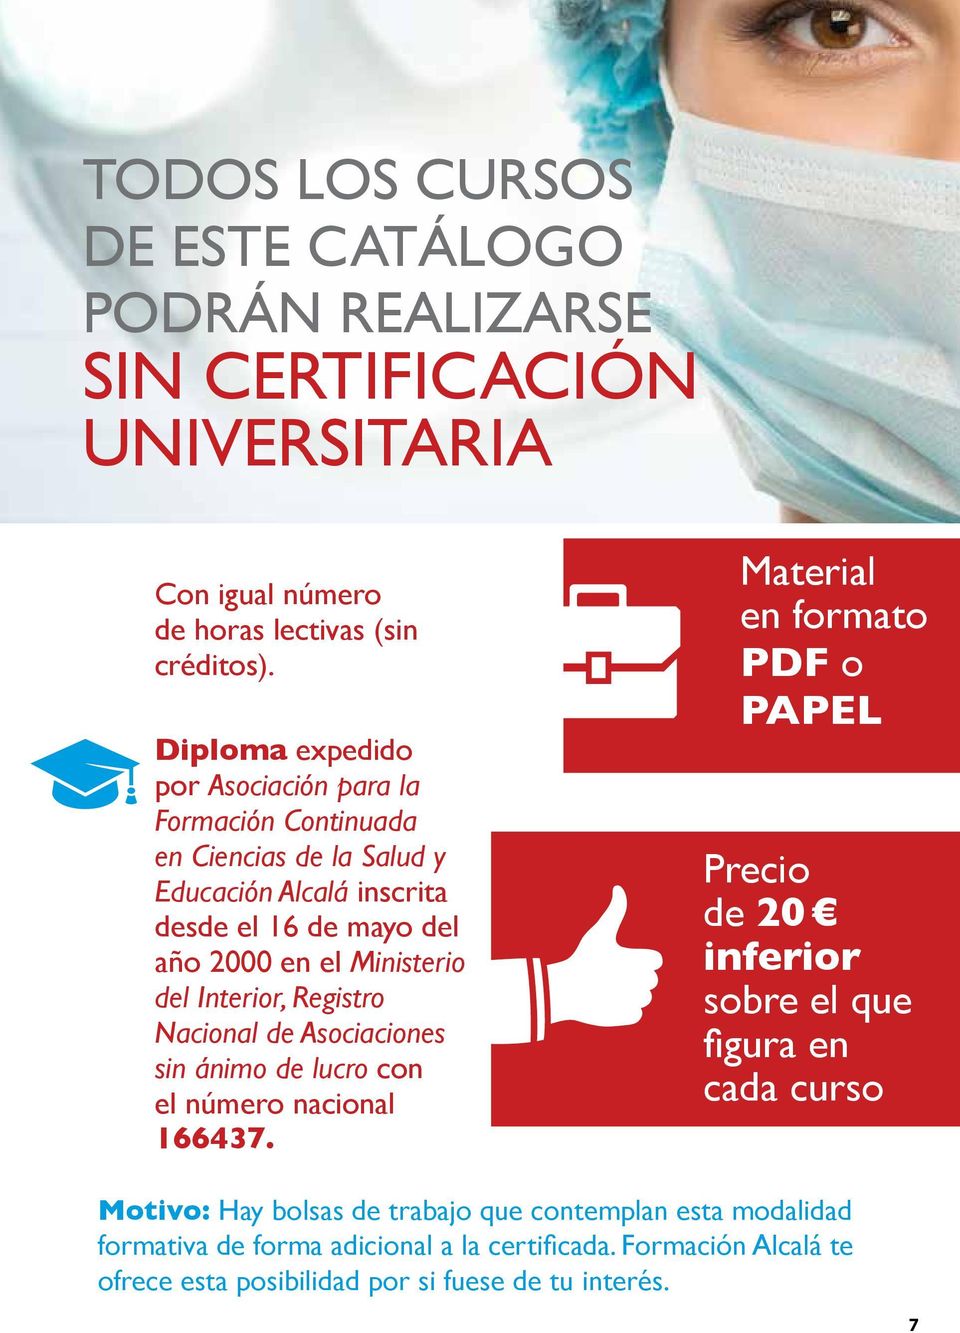 Diploma expedido por Asociación para la Formación Continuada en Ciencias de la Salud y Educación Alcalá inscrita desde el 16 de mayo del año 2000 en el Ministerio del